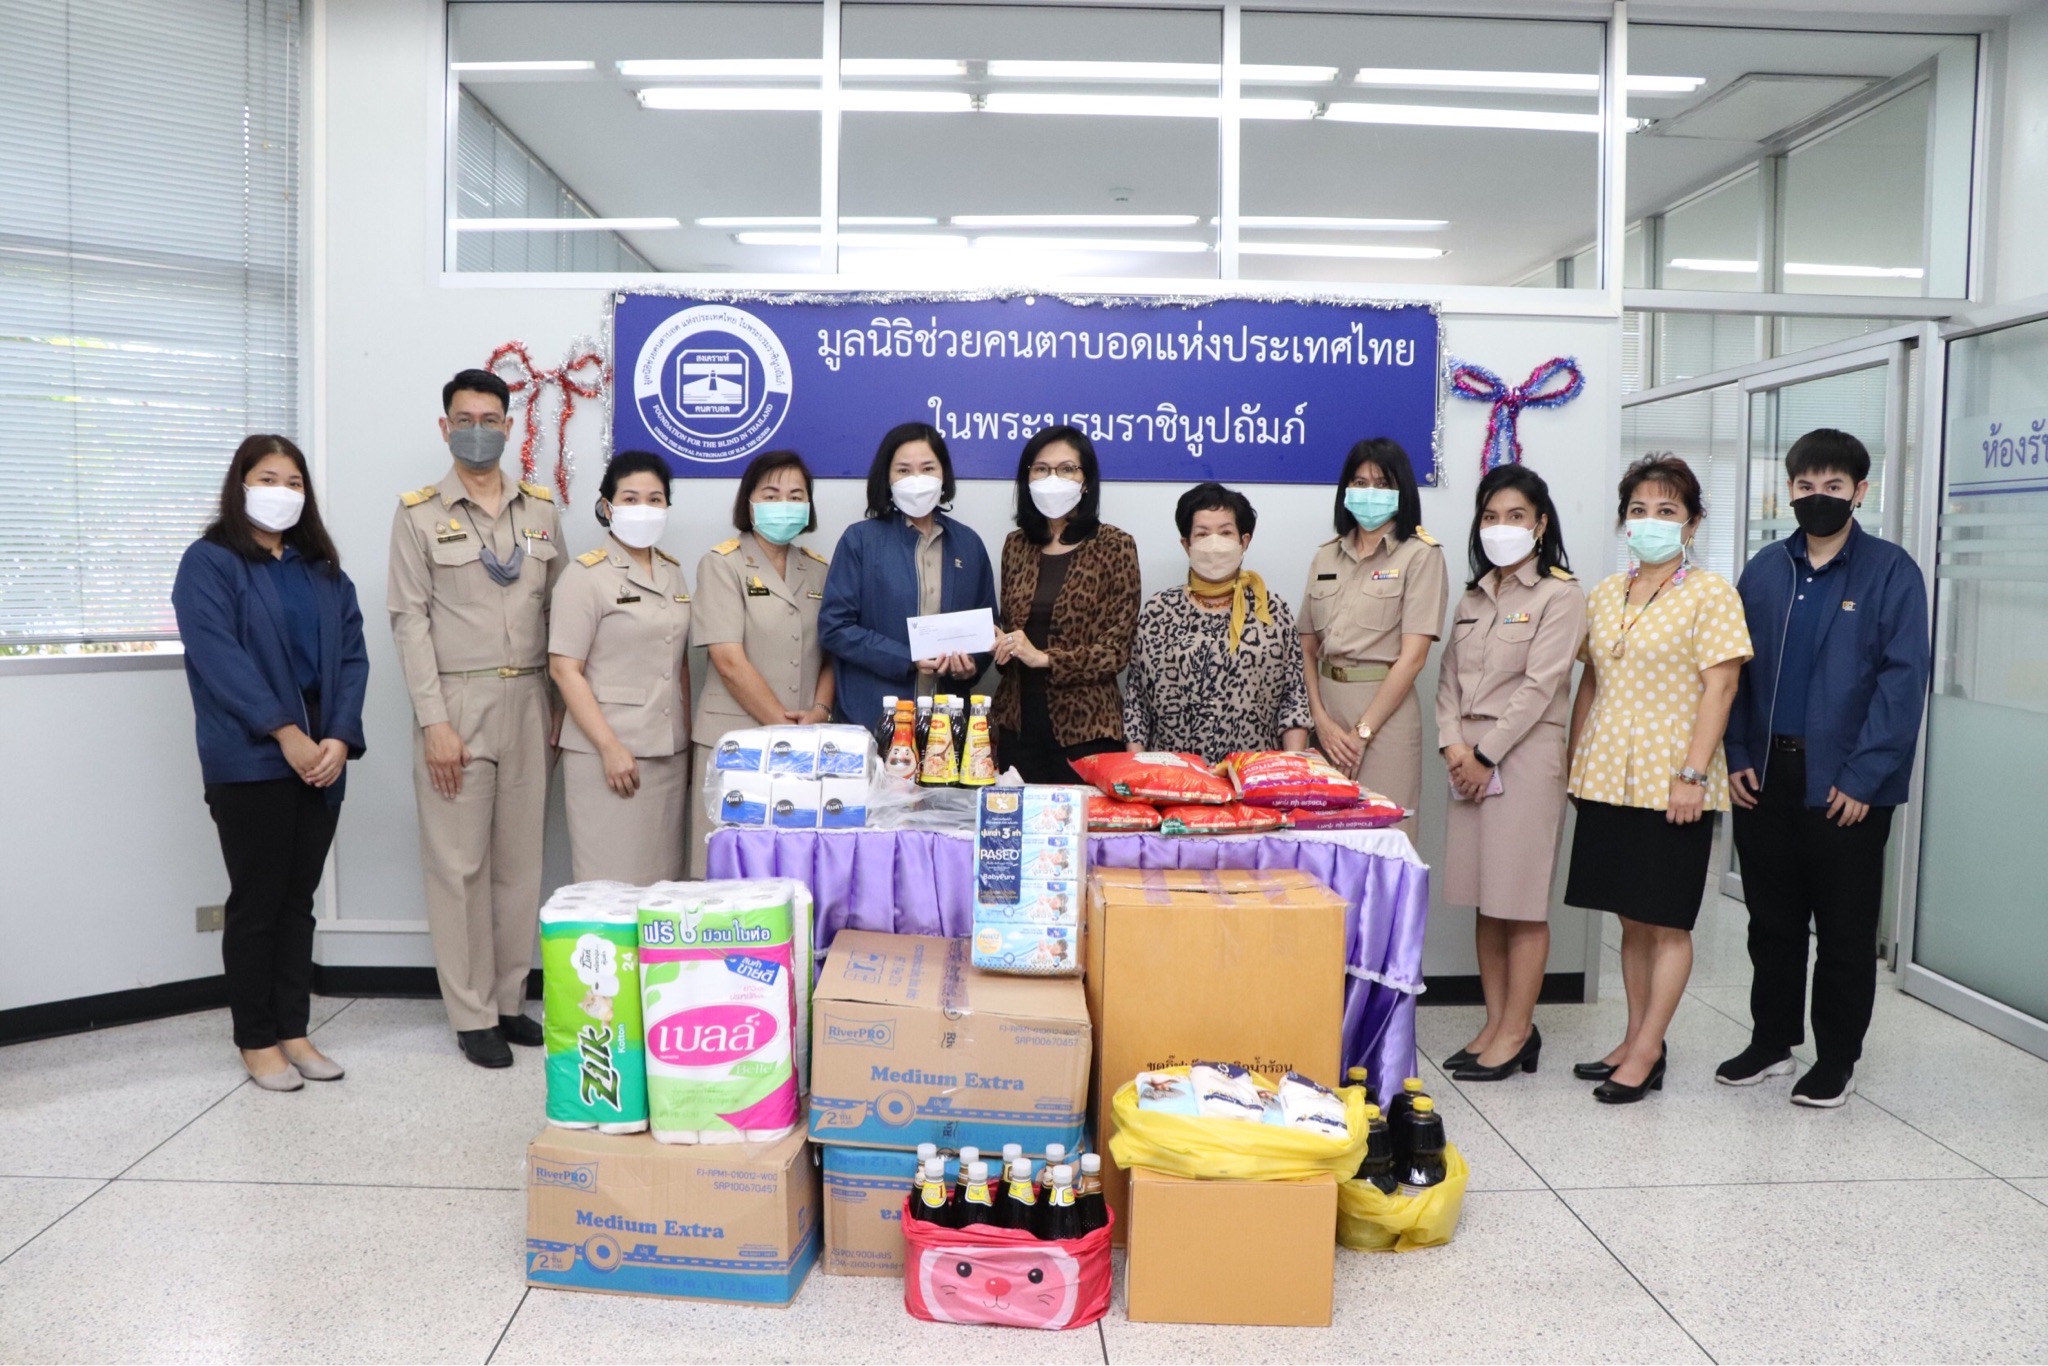 สศอ. ร่วมบริจาคสิ่งของให้กับมูลนิธิช่วยคนตาบอดแห่งประเทศไทย ในพระบรมราชินูปถัมภ์